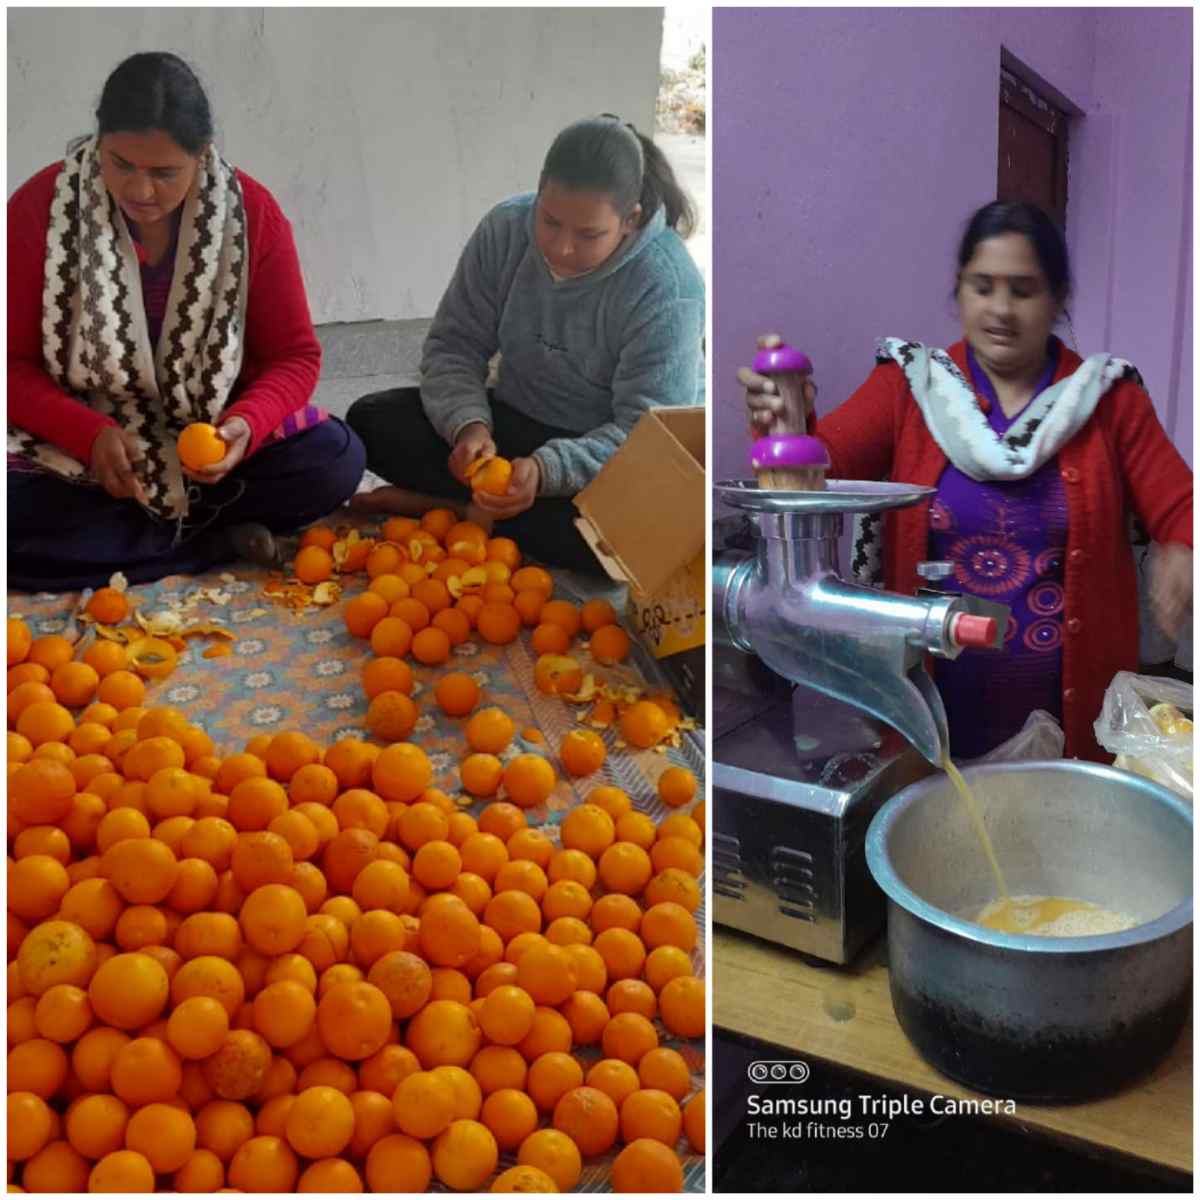 घर के काम के साथ फूड प्रोसेसिंग यूनिट संचालित कर अपनी आर्थिकी को मजबूत कर रही महिलाएं